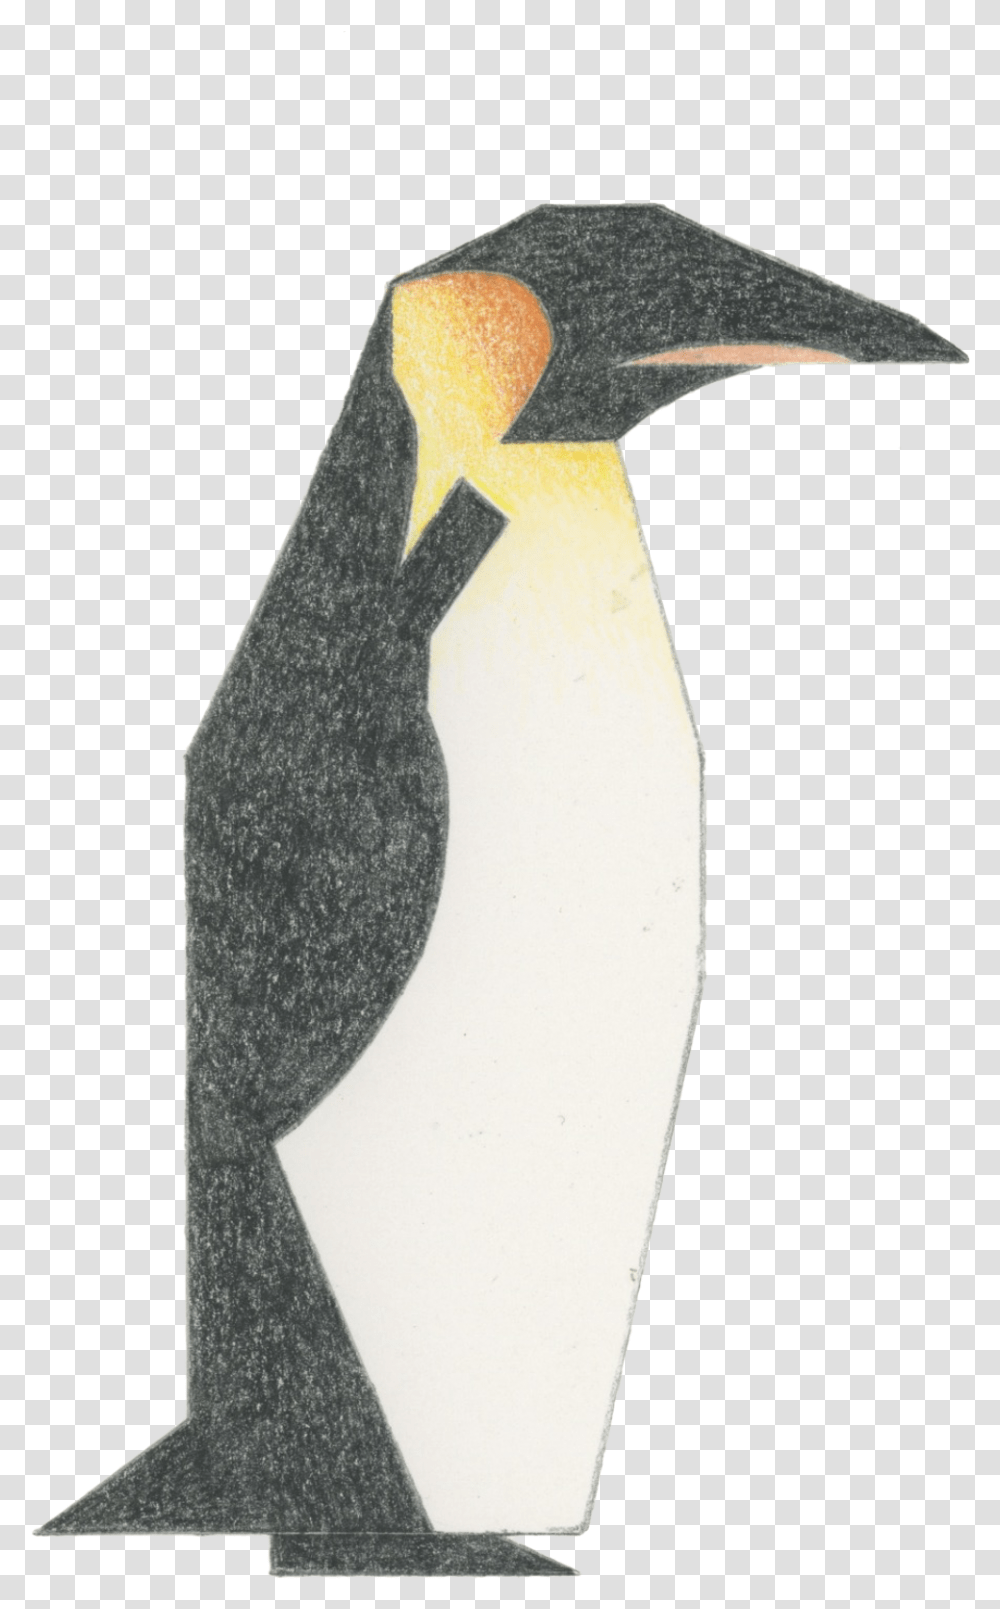 Penguin, Bird, Animal, Cross Transparent Png